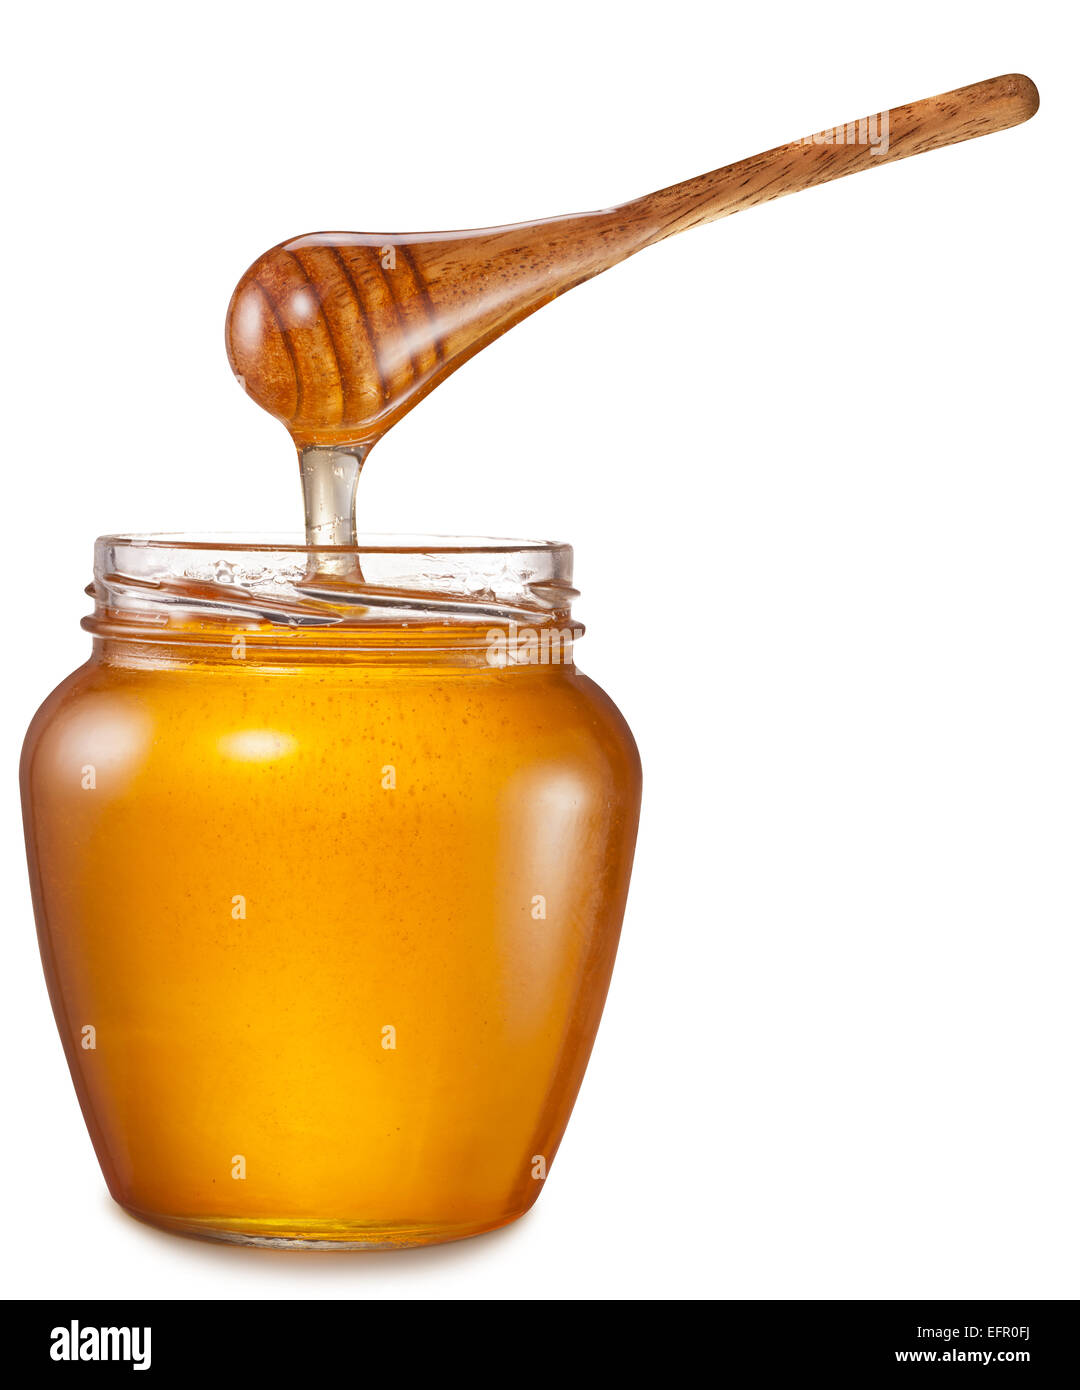 Honig fließt in Glas. Datei enthält Beschneidungspfade. Stockfoto